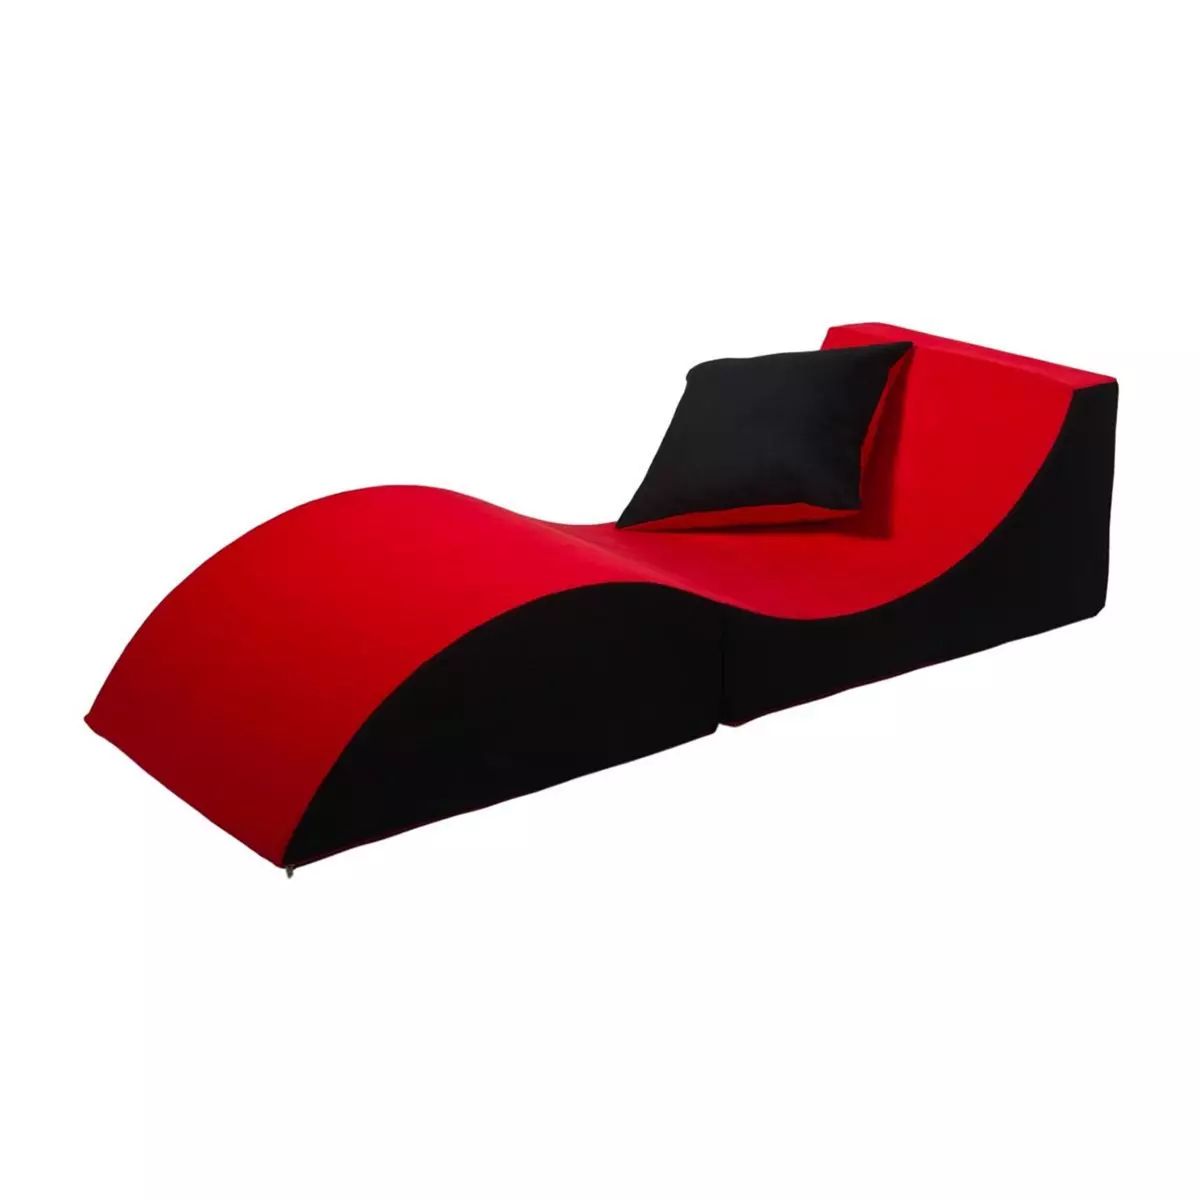  Chaise longue 3 en 1 multi-usage rouge-noir